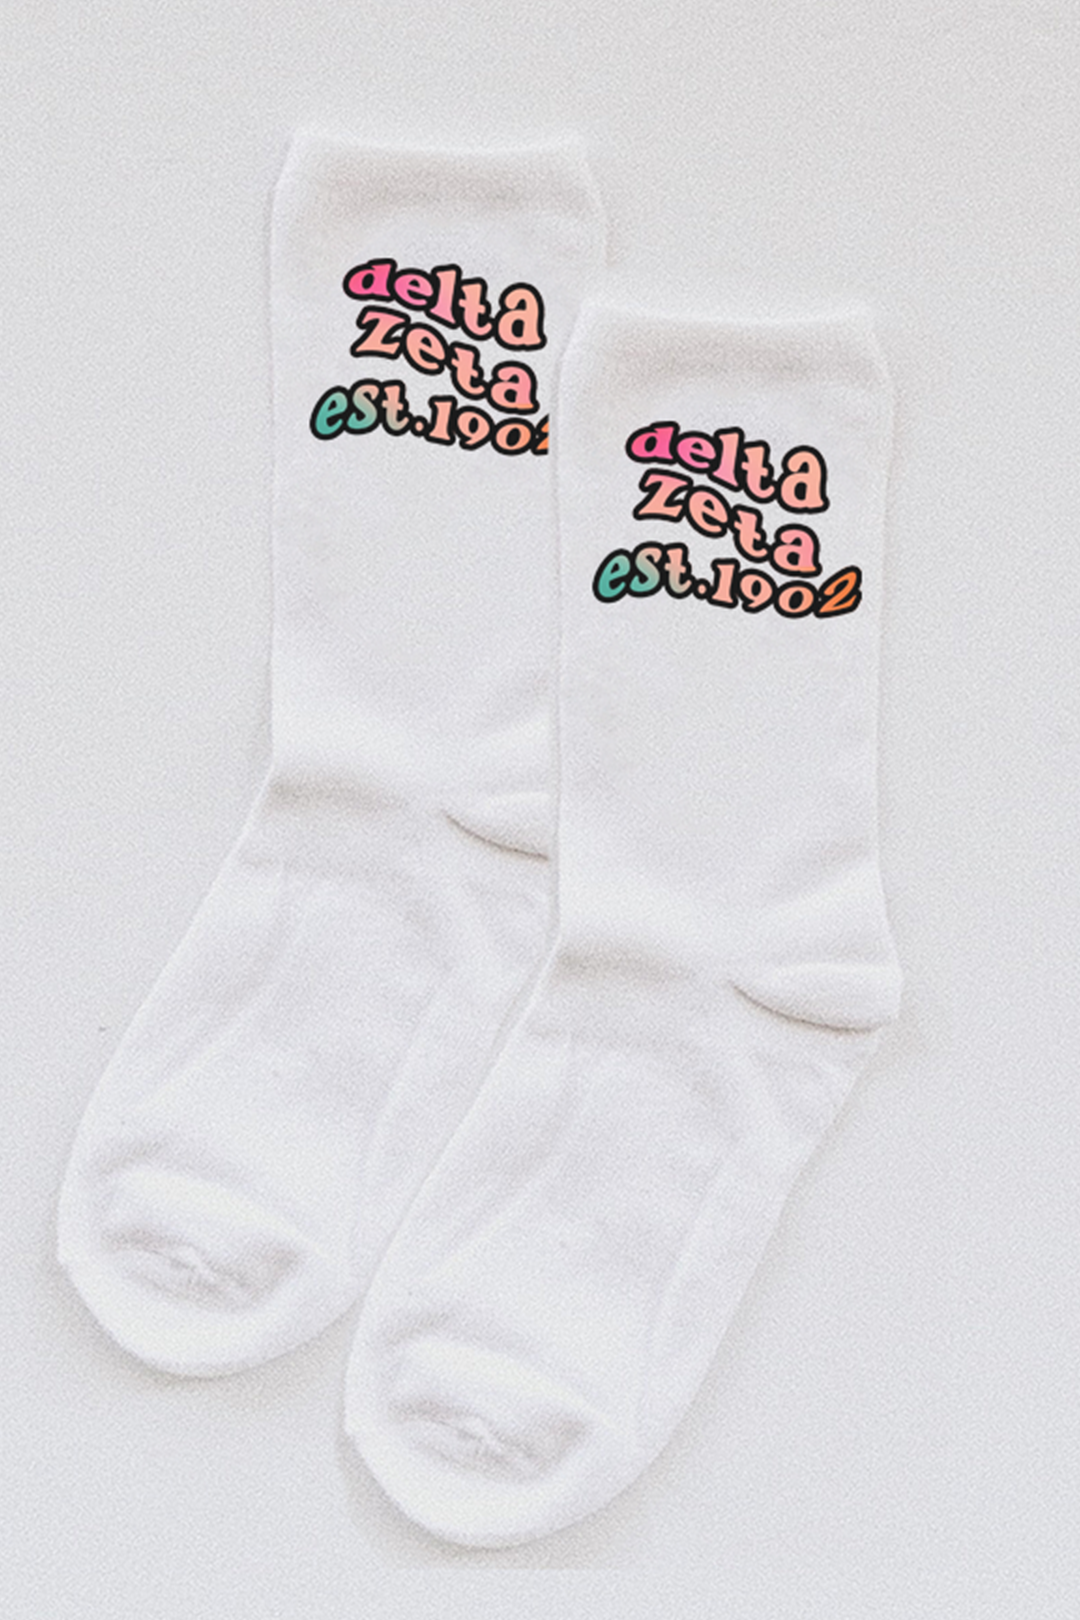 Gradient socks - Delta Zeta